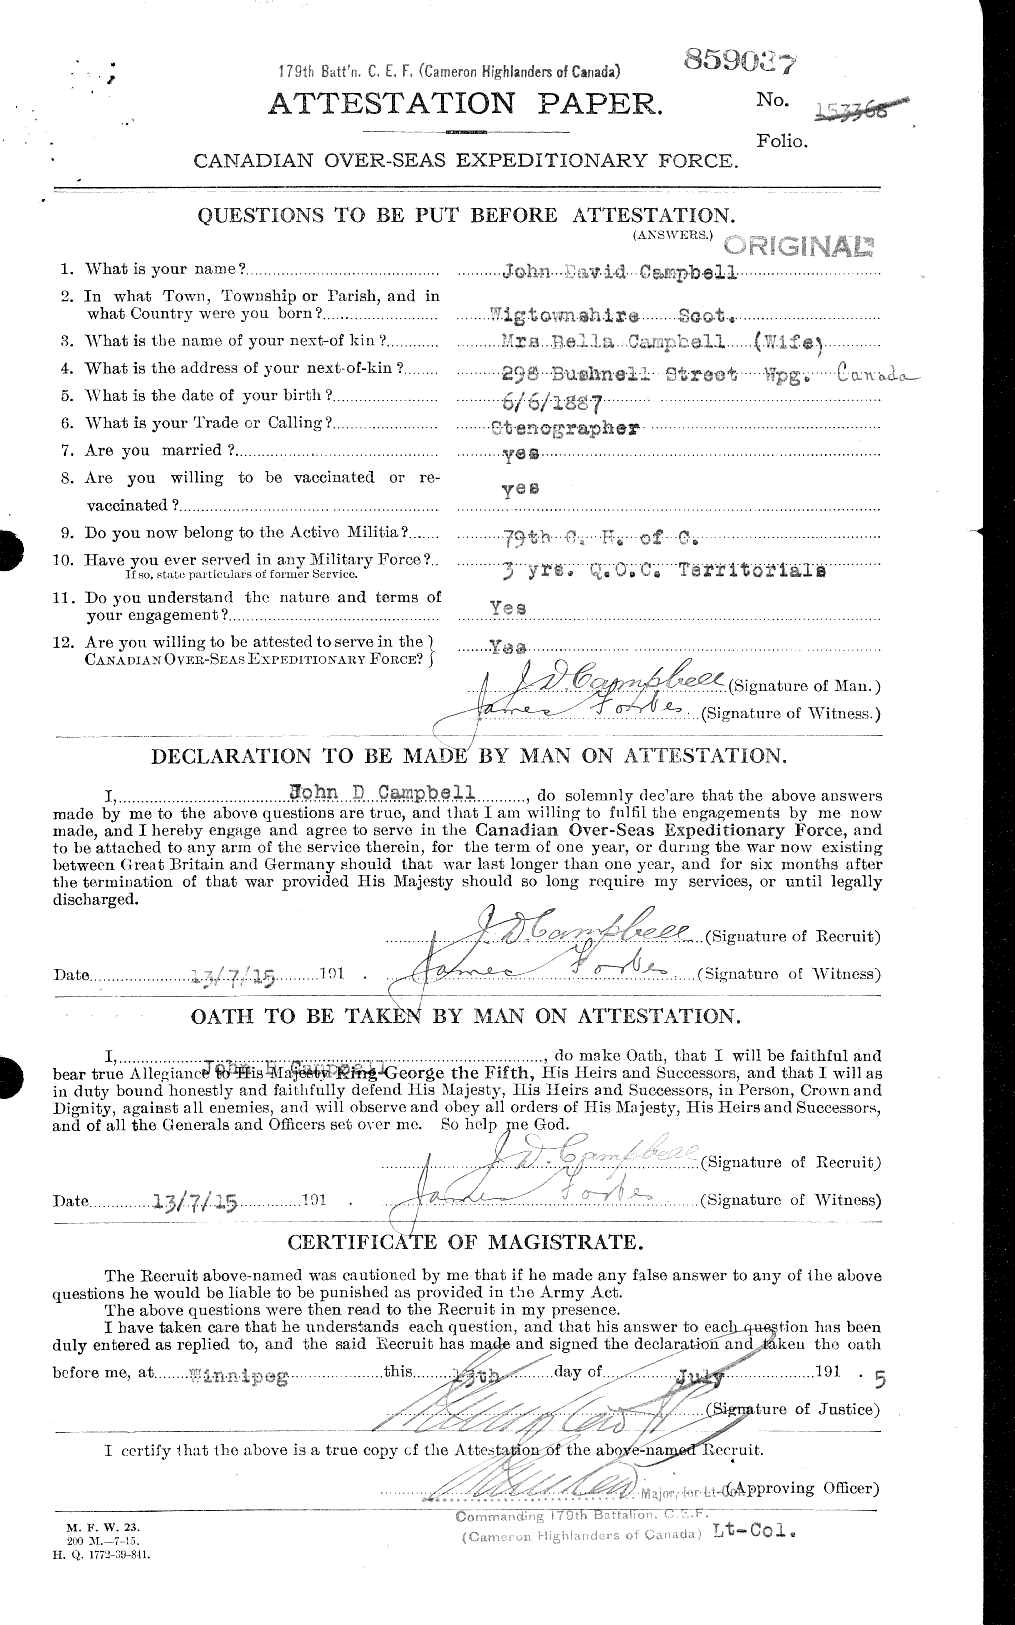 Dossiers du Personnel de la Première Guerre mondiale - CEC 008499a